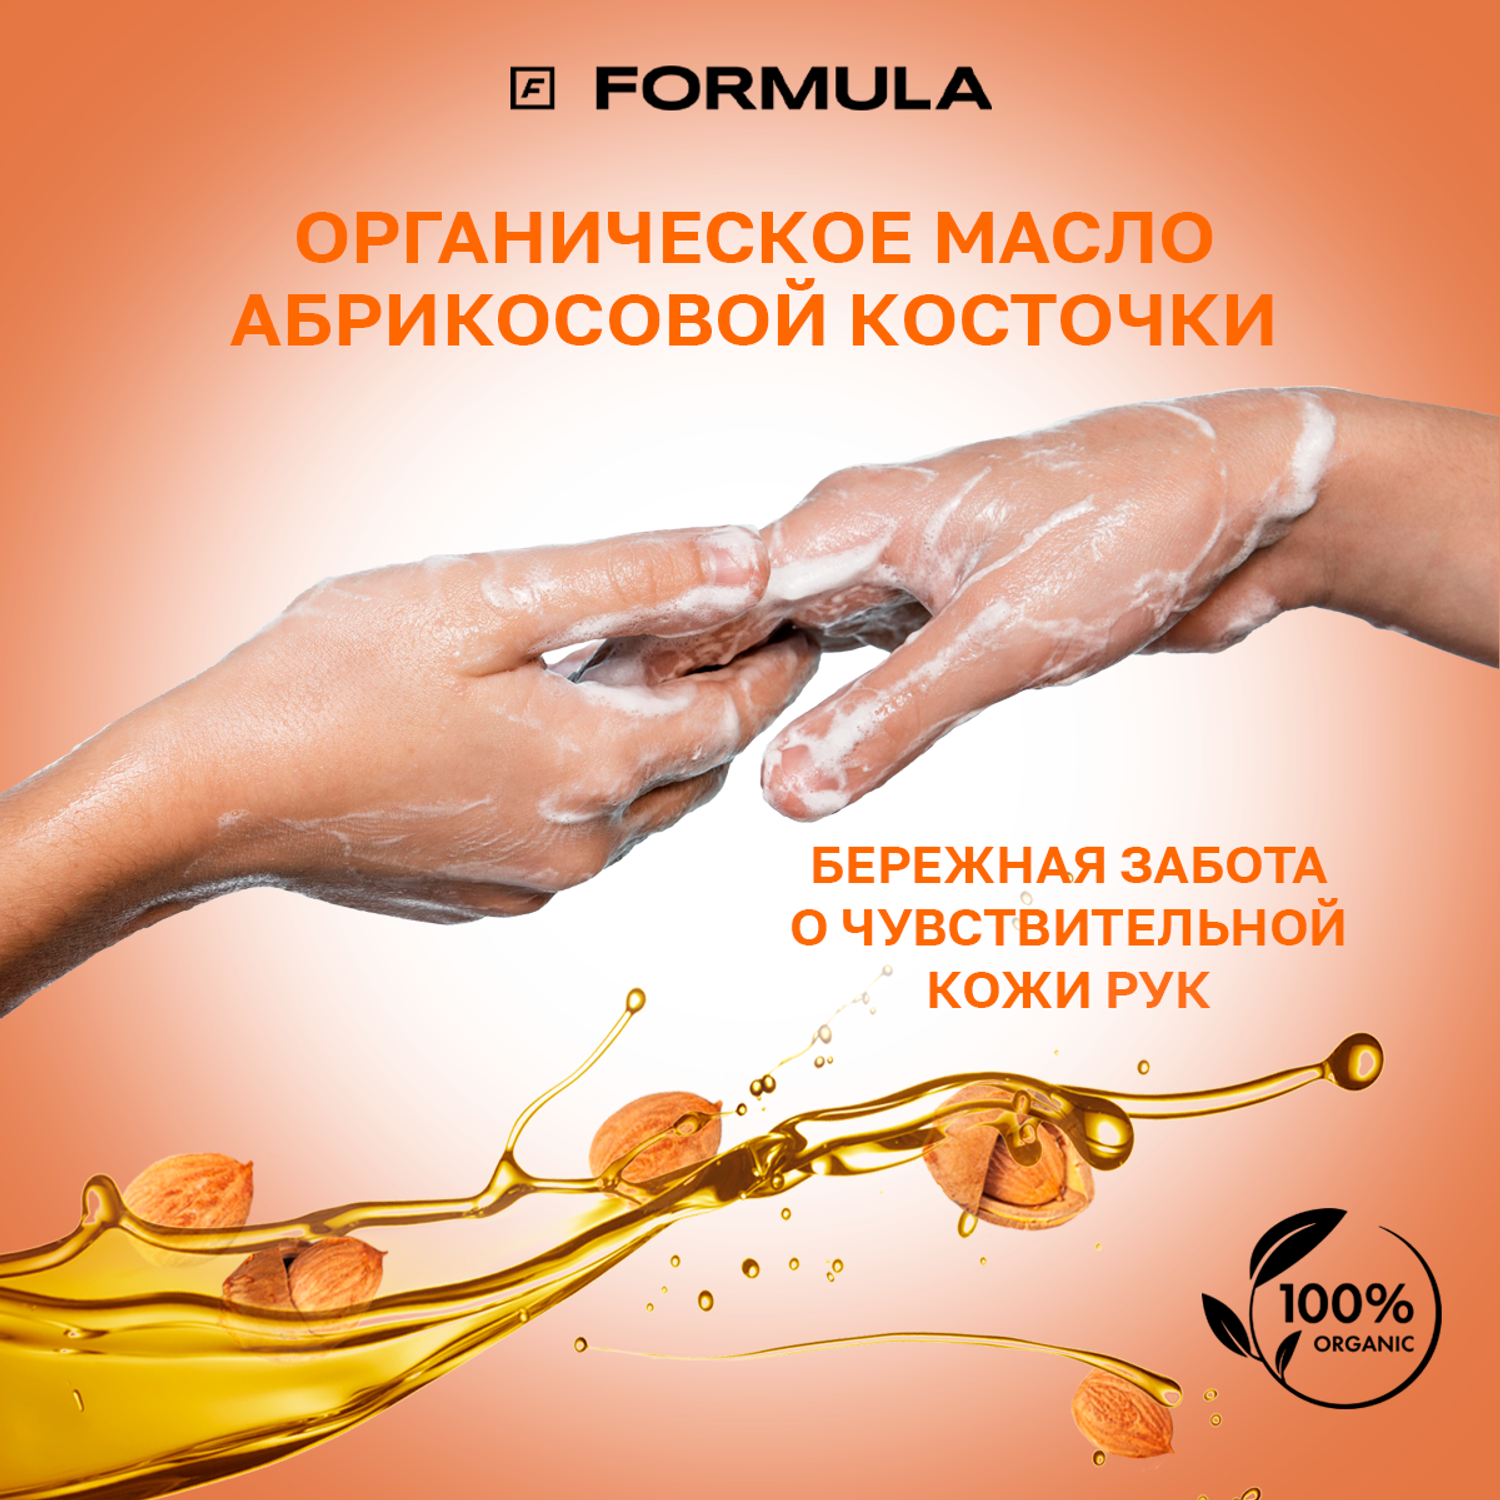 Крем-мыло F Formula Антиоксидант с маслом абрикосовой косточки 500 мл дой-пак - фото 3